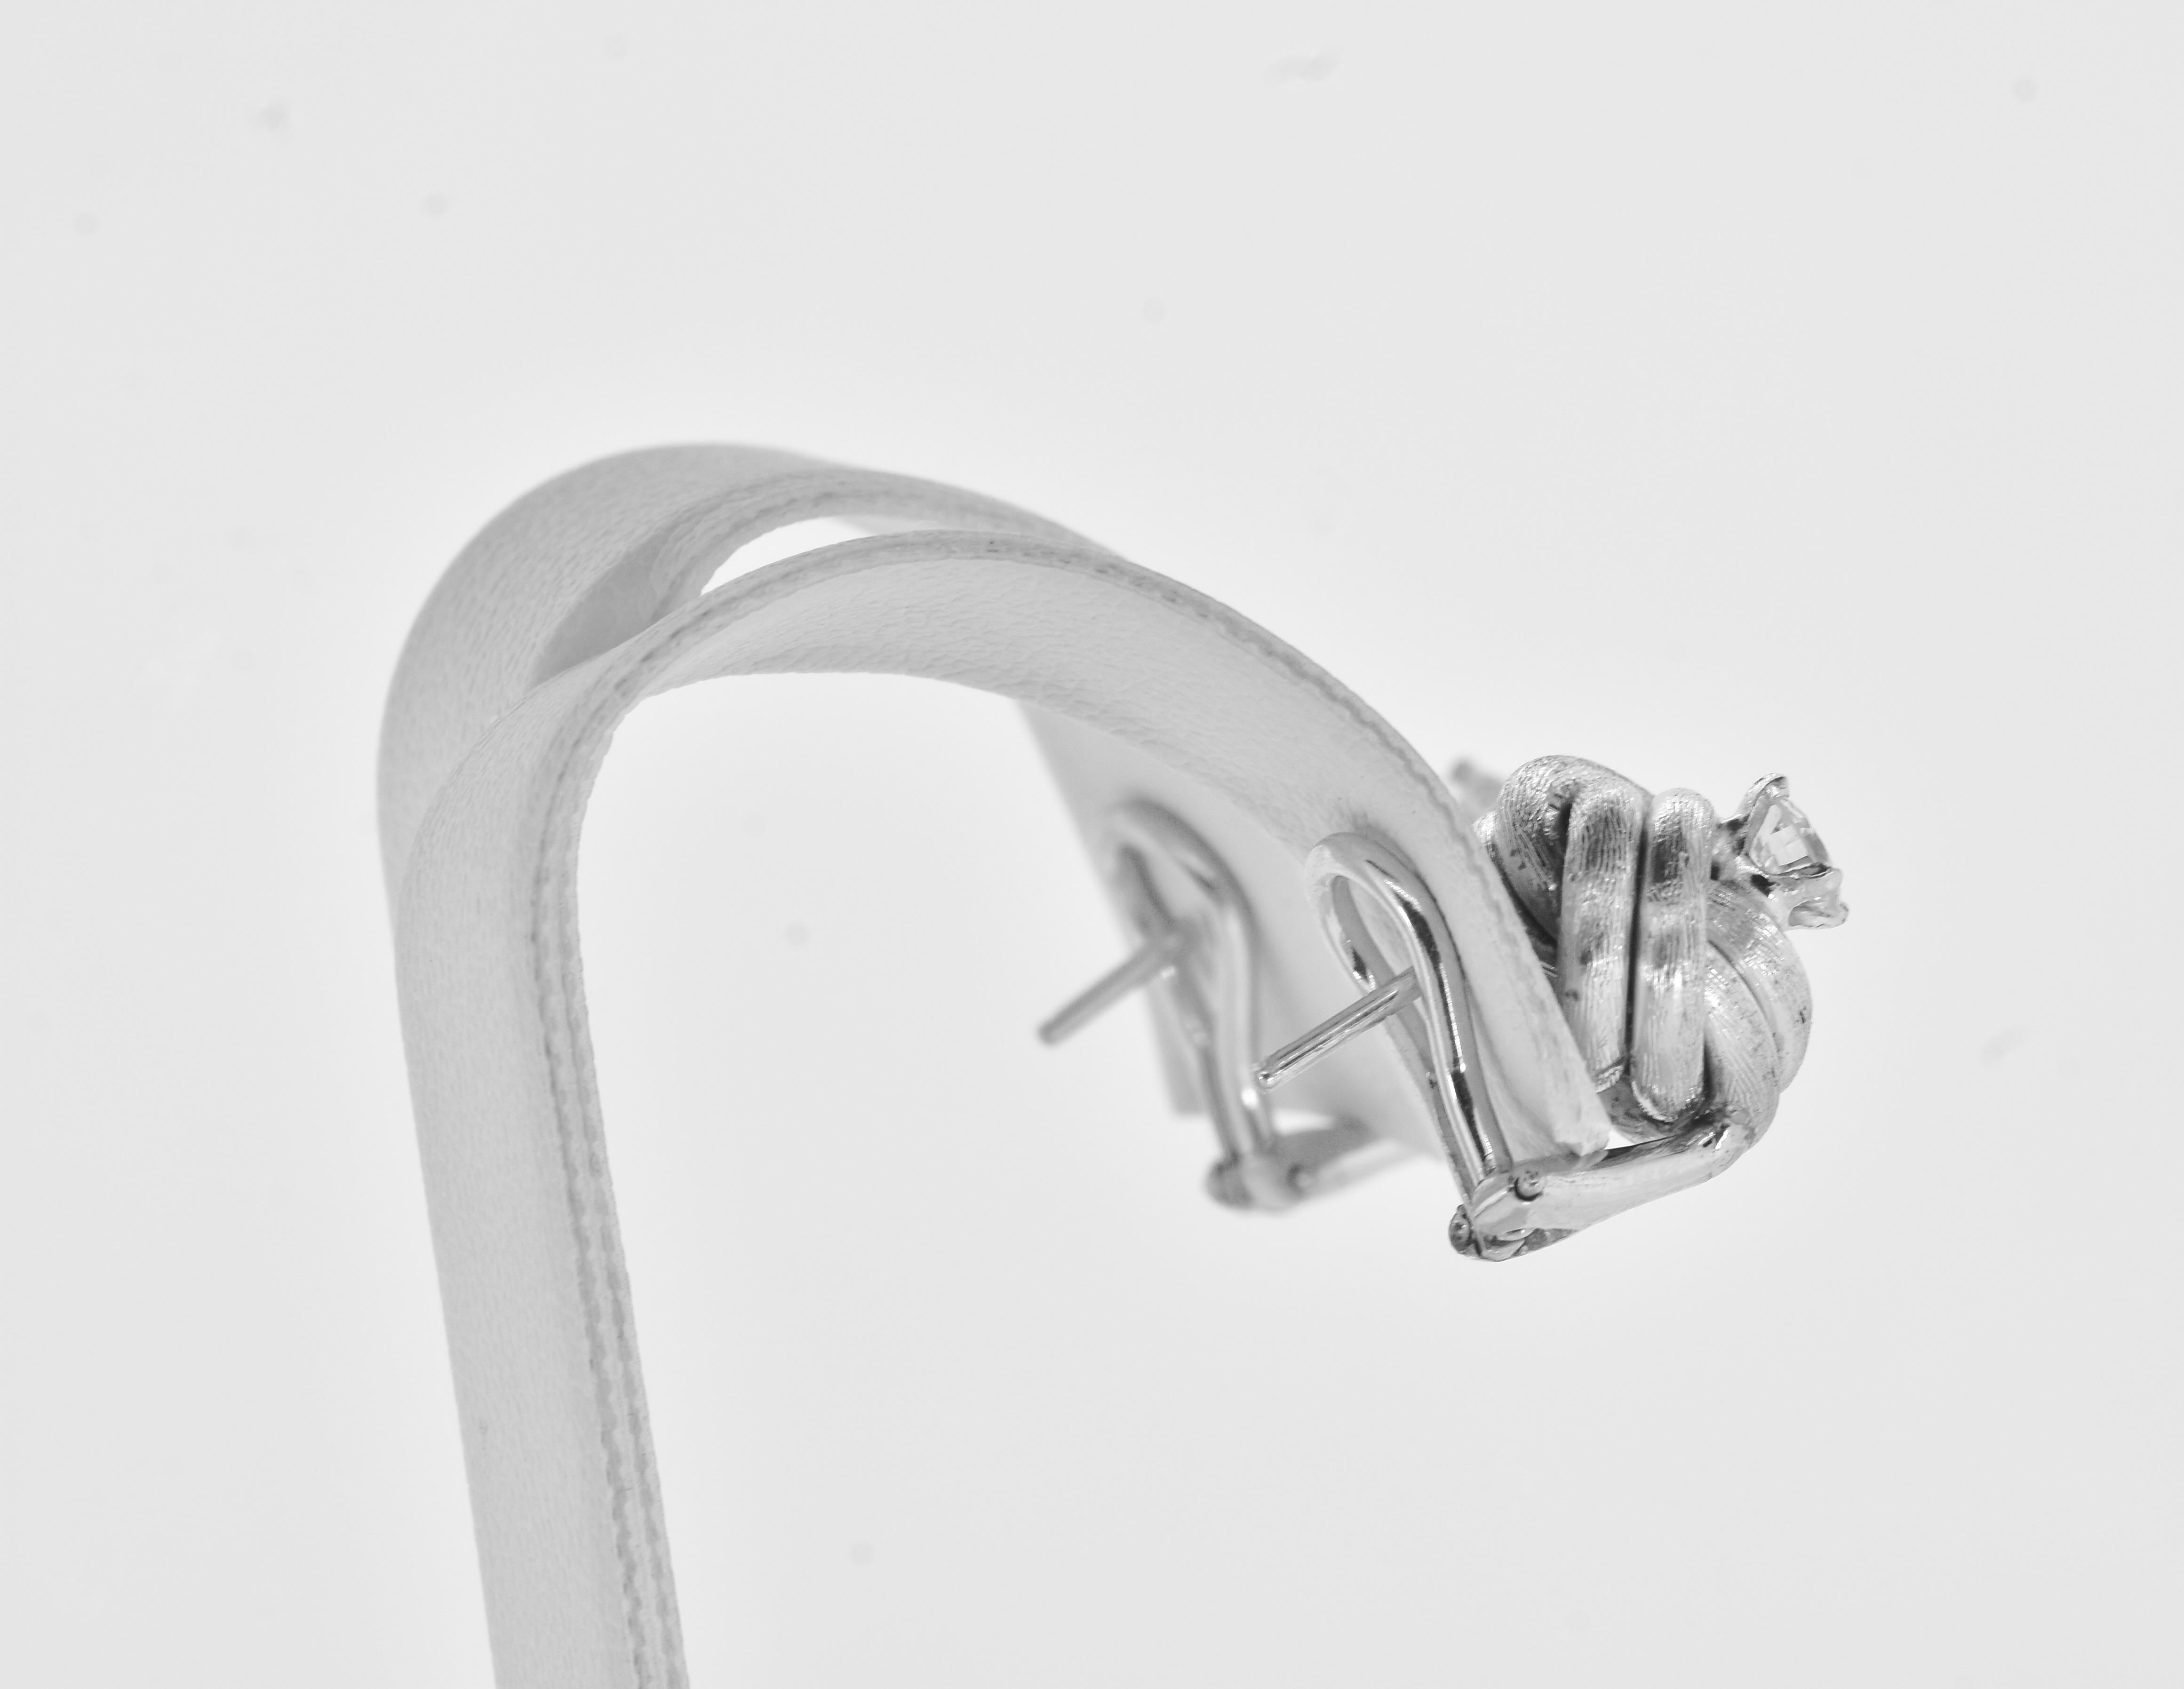 Women's or Men's Diamond Ear Stud White Gold Medium Size Earrings in a Love Knot Motif. For Sale